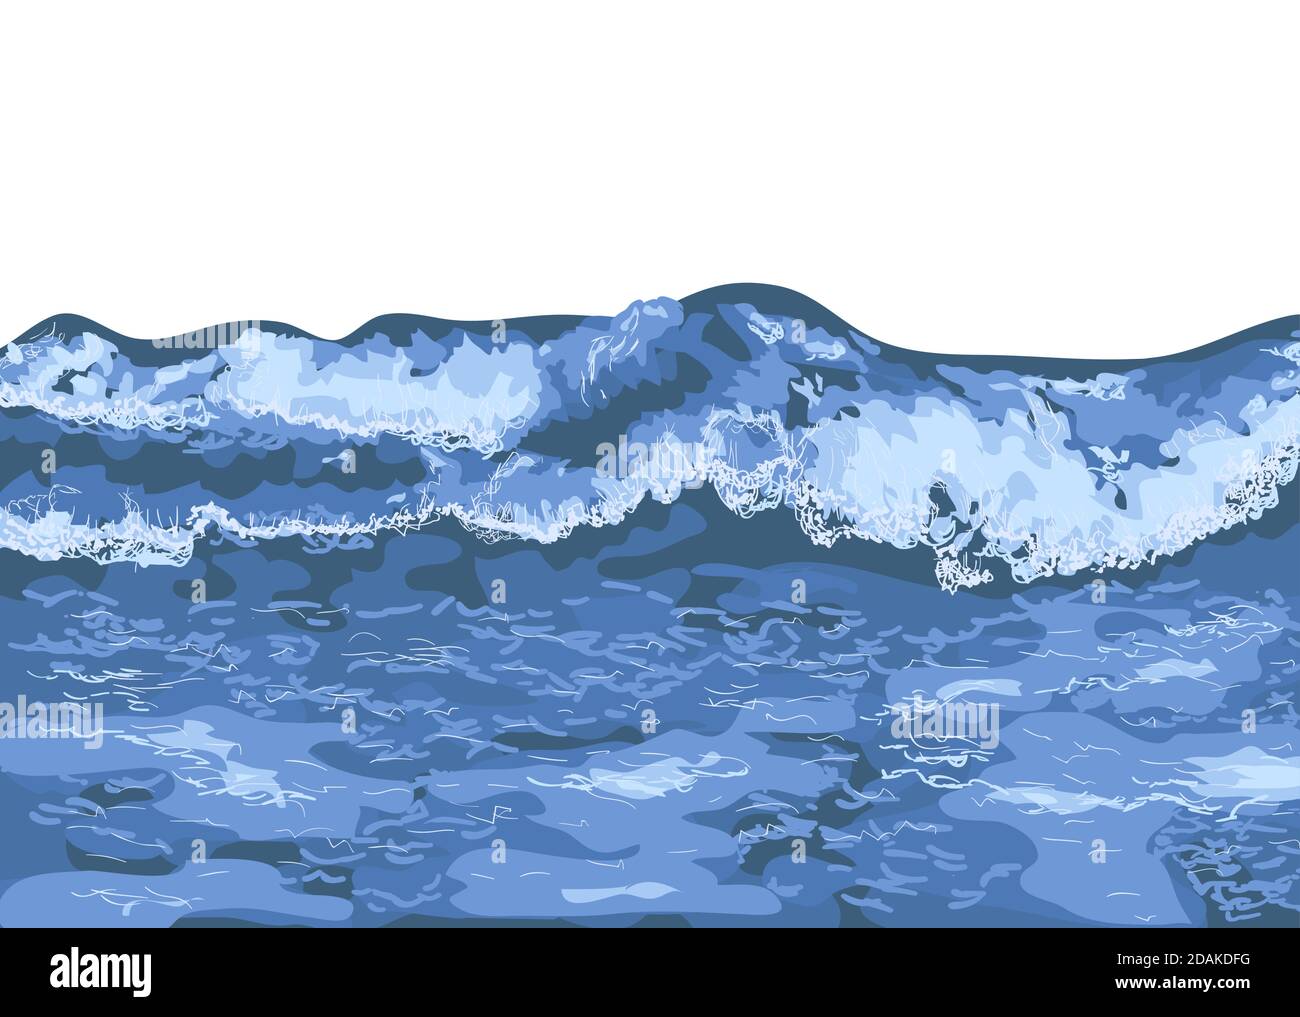 Wellen auf dem Meer. Brechende blaue Welle auf dem Ozean Stock Vektor